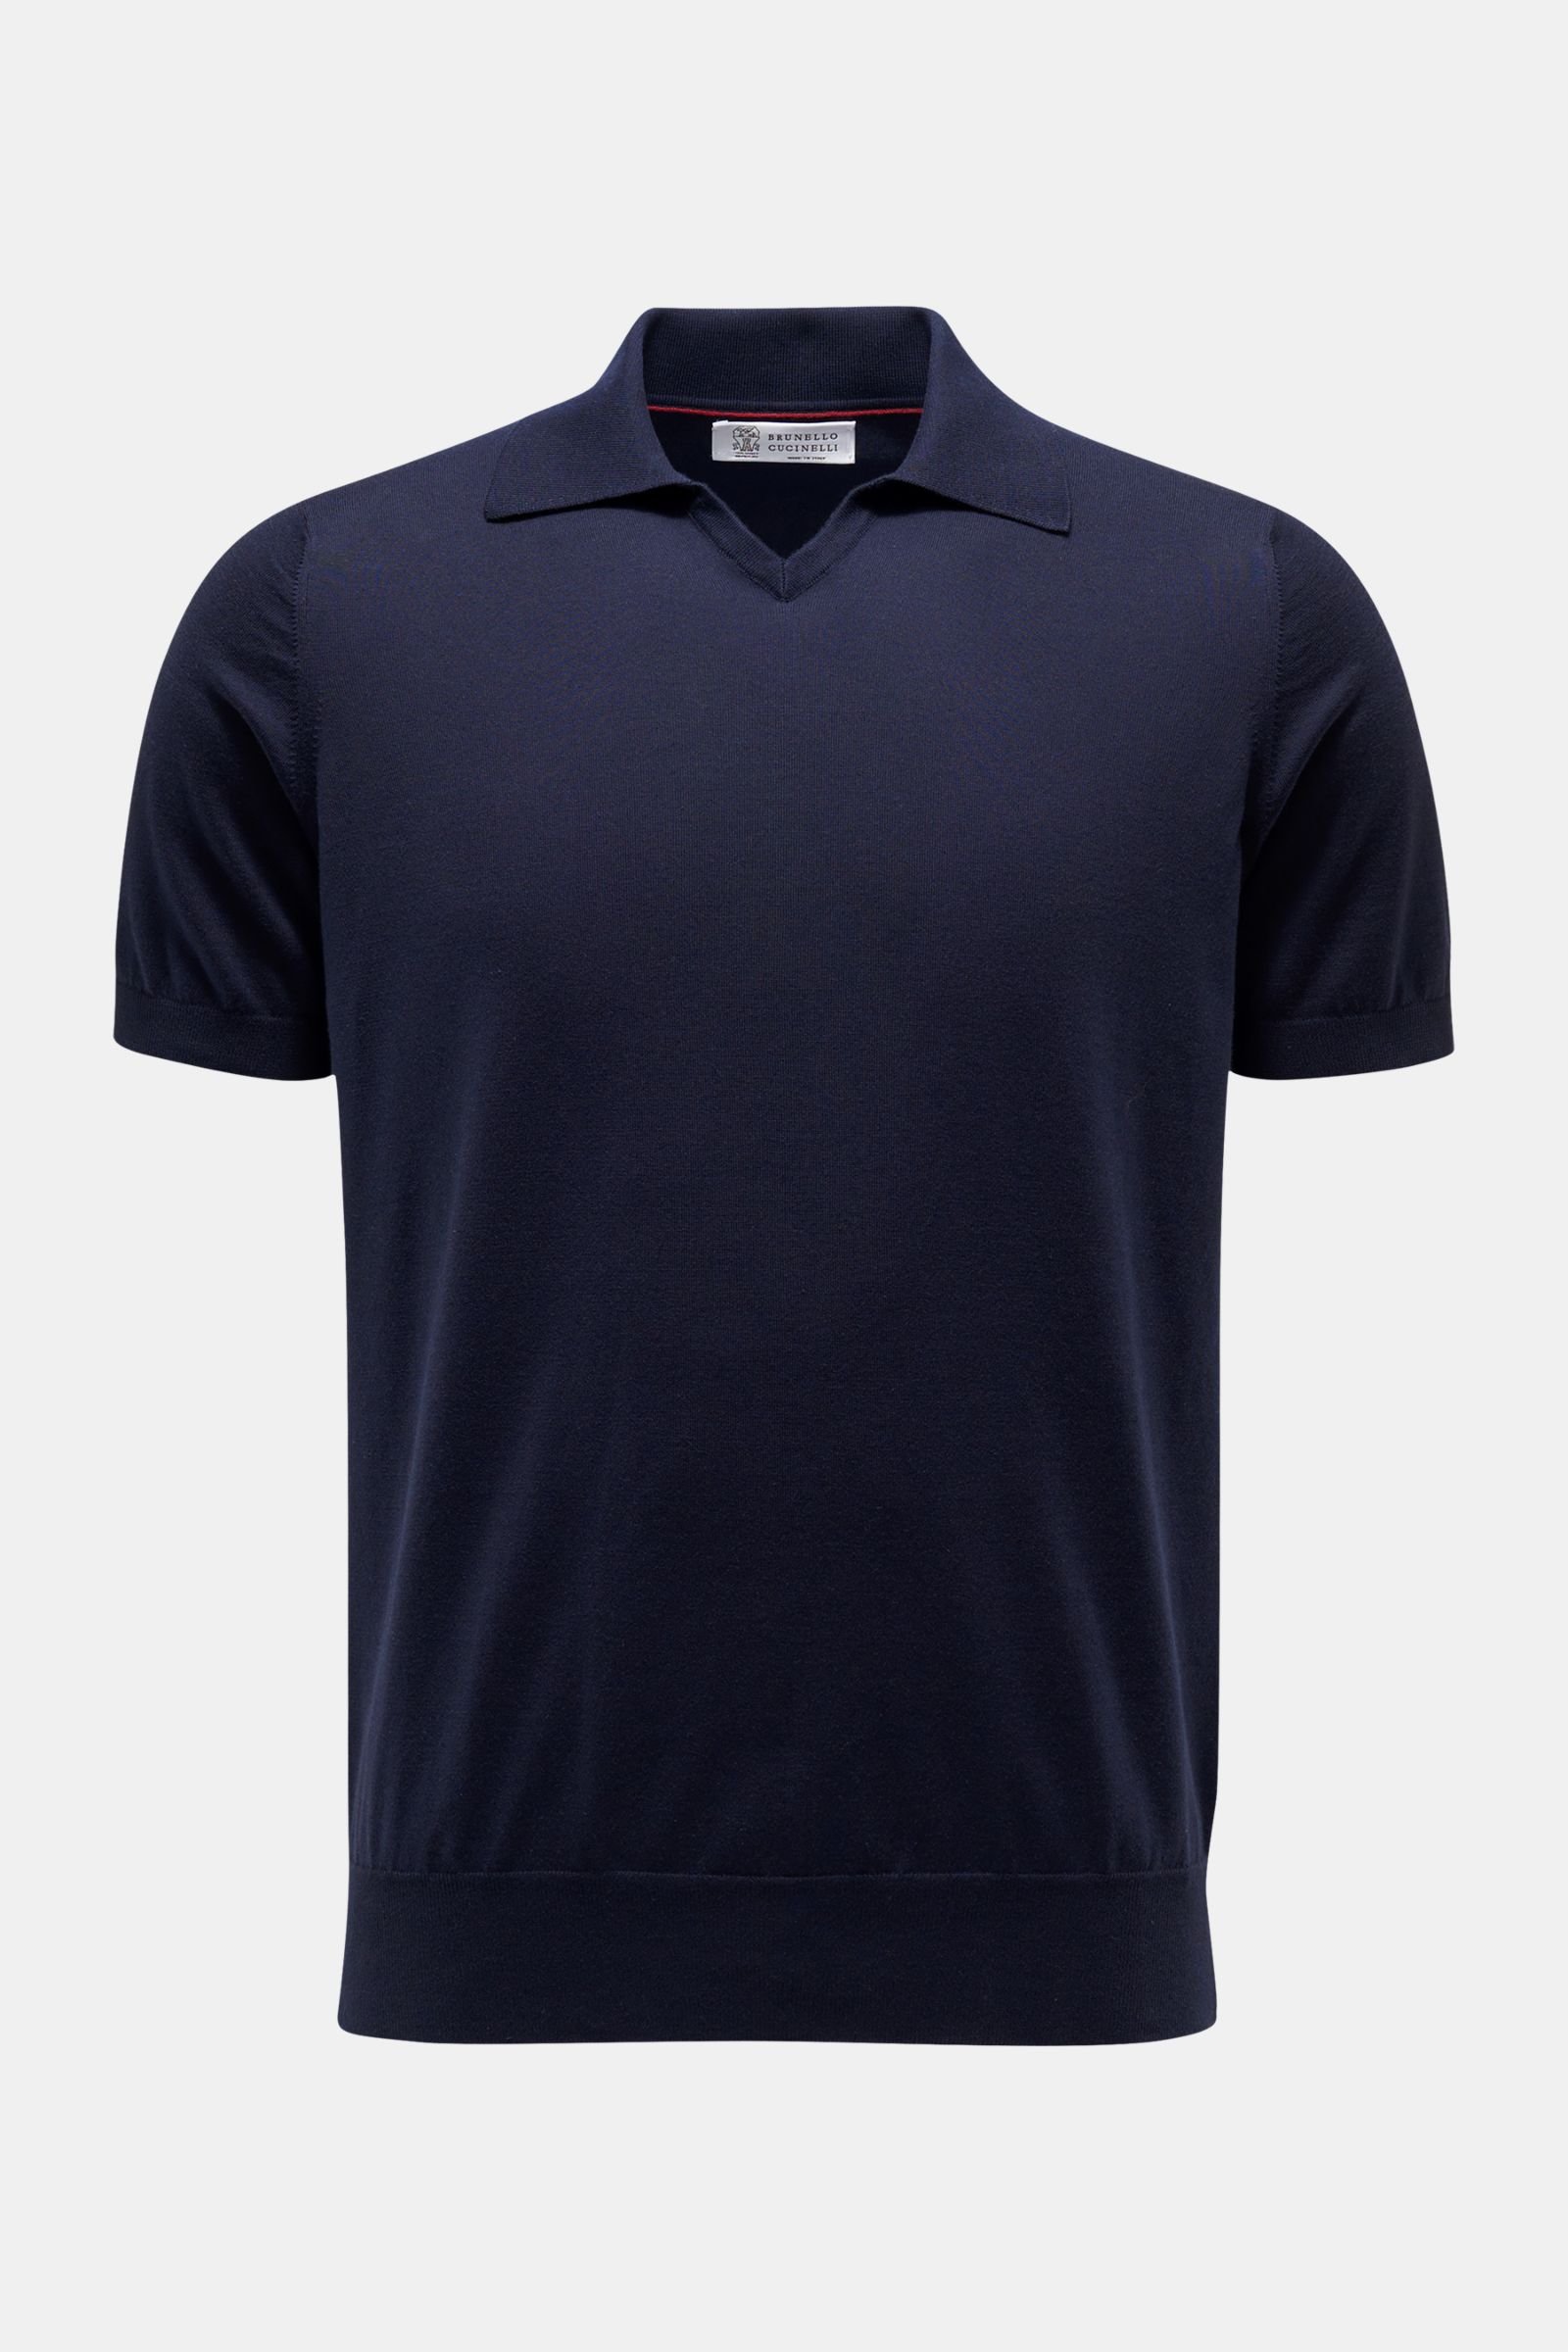 Short sleeve knit polo shirt navy